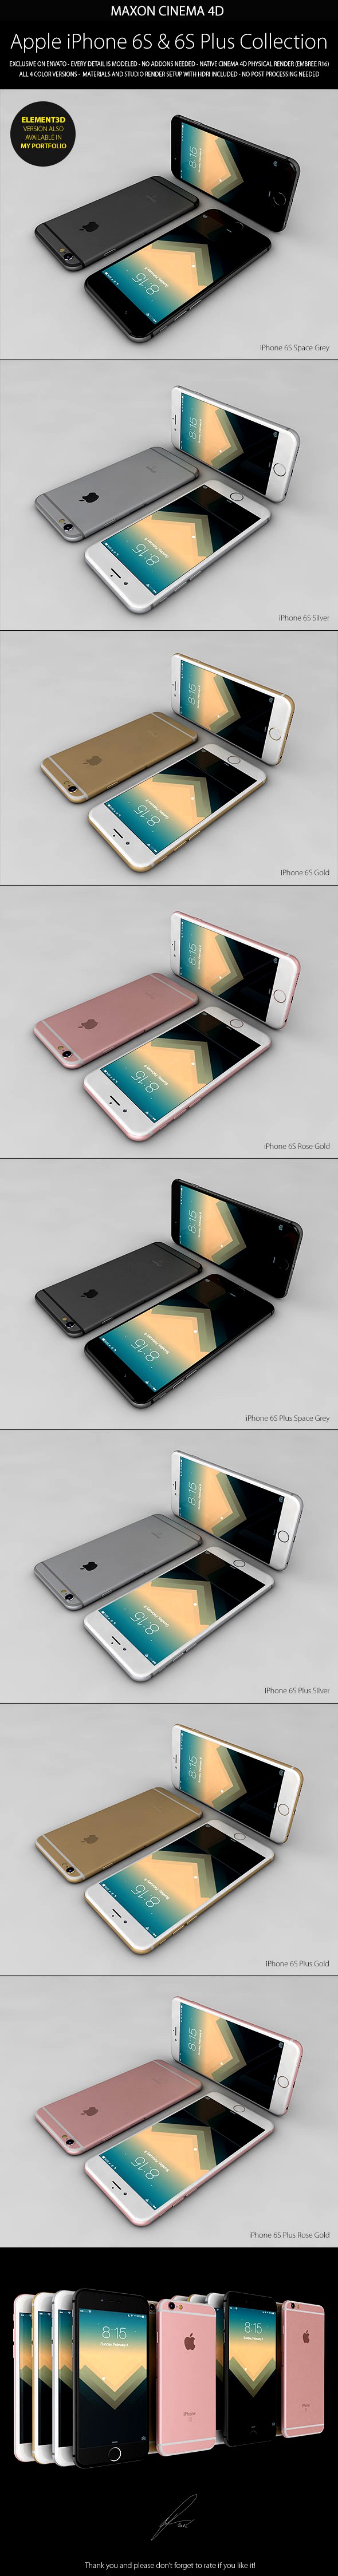 iPhone 6S &amp; 6S Plus